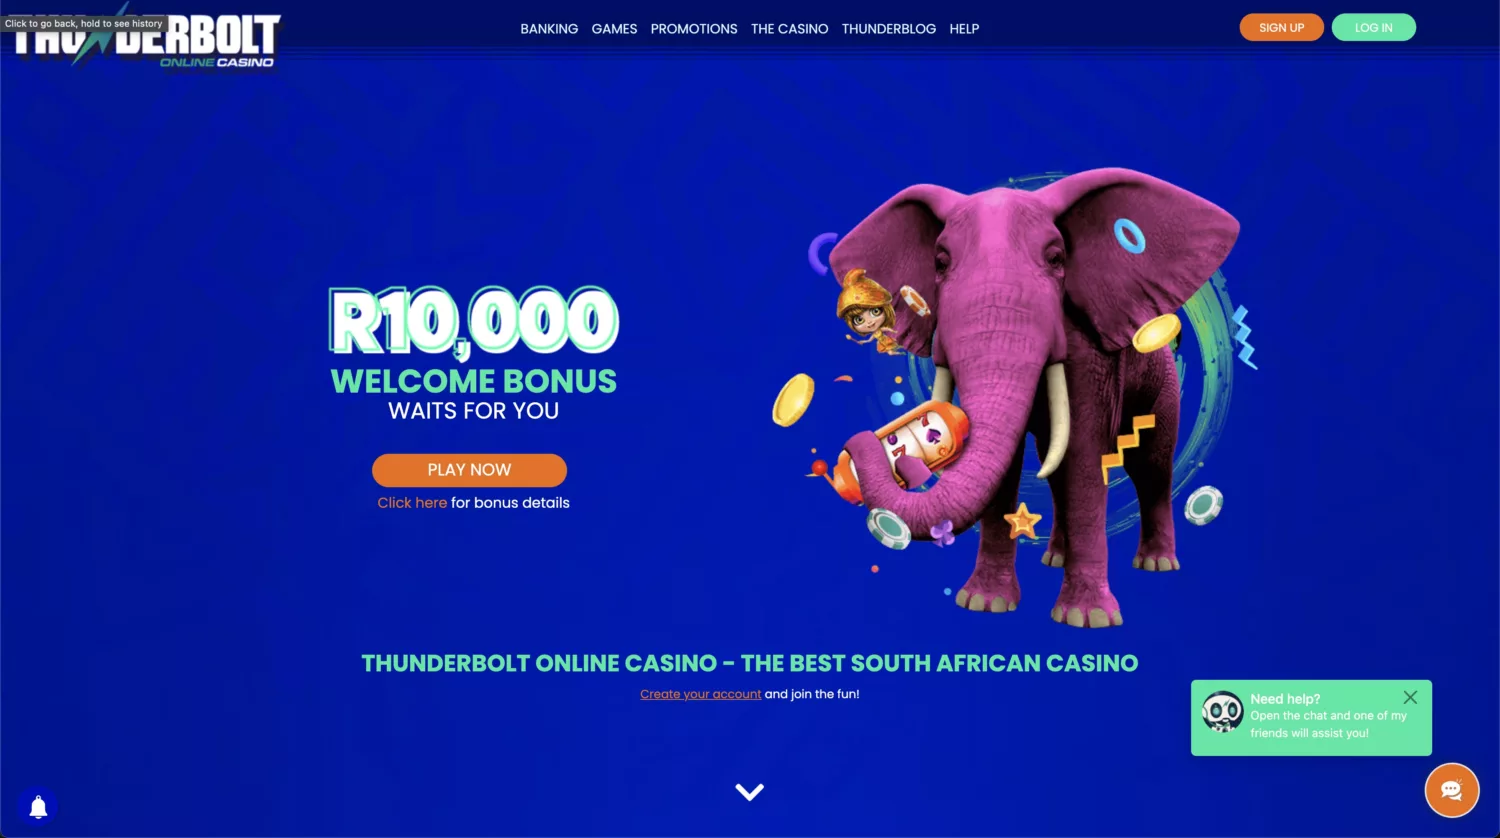 Thunderbolt casino homepage screenshot